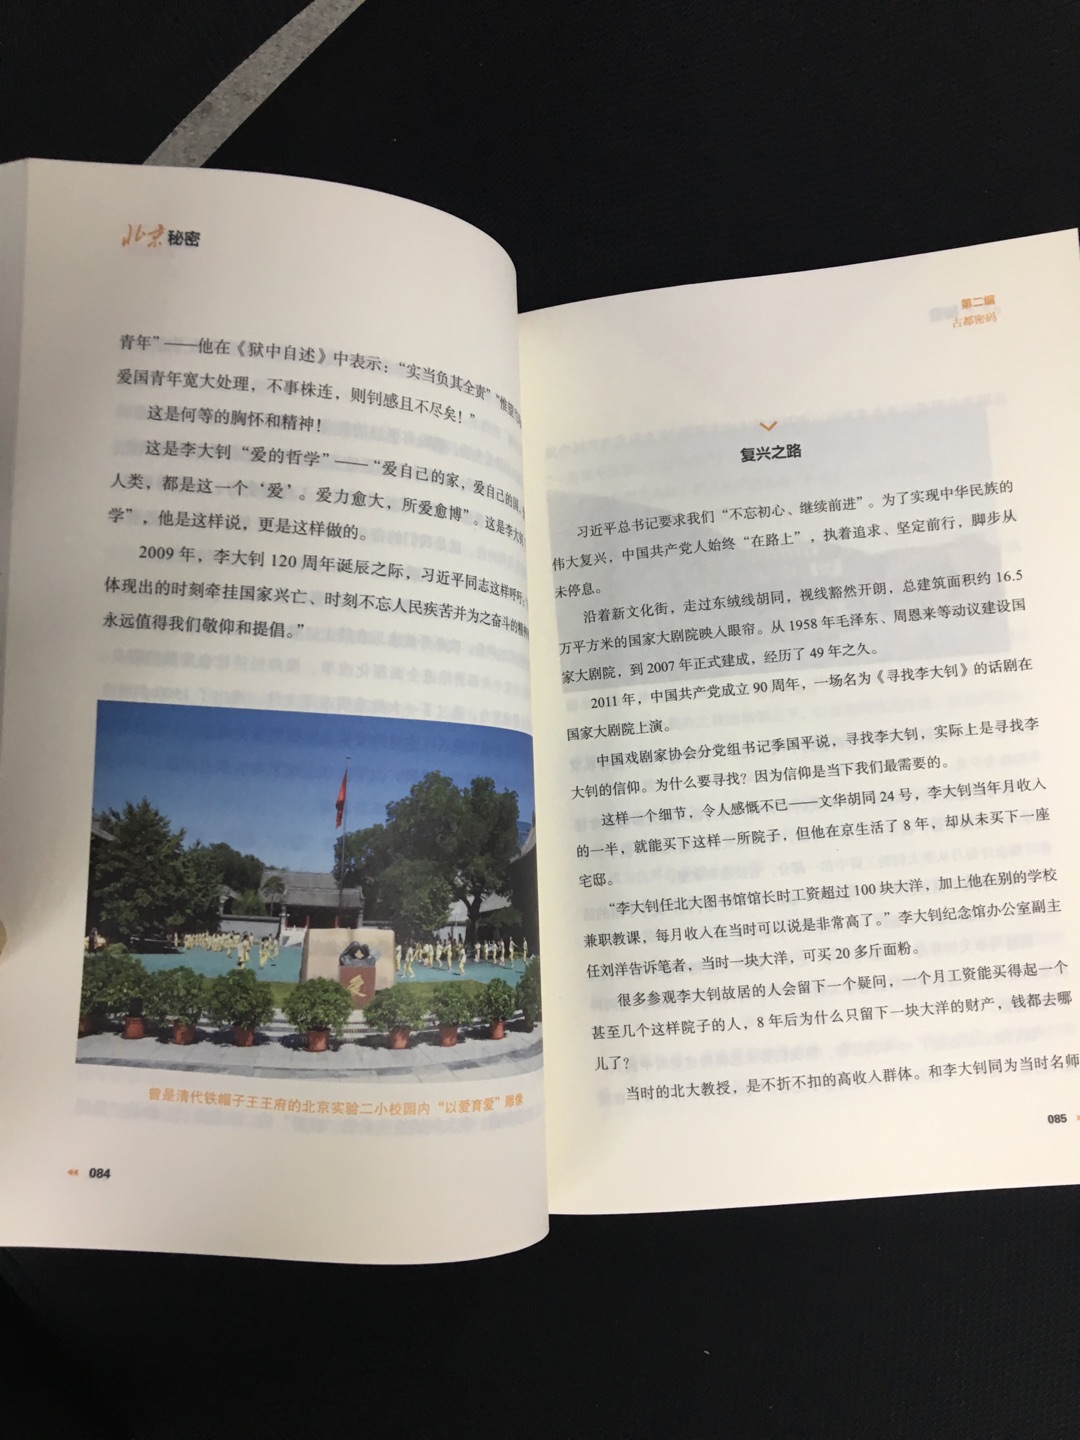 搭配单位发的公园门票年卡，带上《北京秘密》这本书，去各个历史文化景点打卡，今年的周末就这么安排得明明白白了，开心哈哈